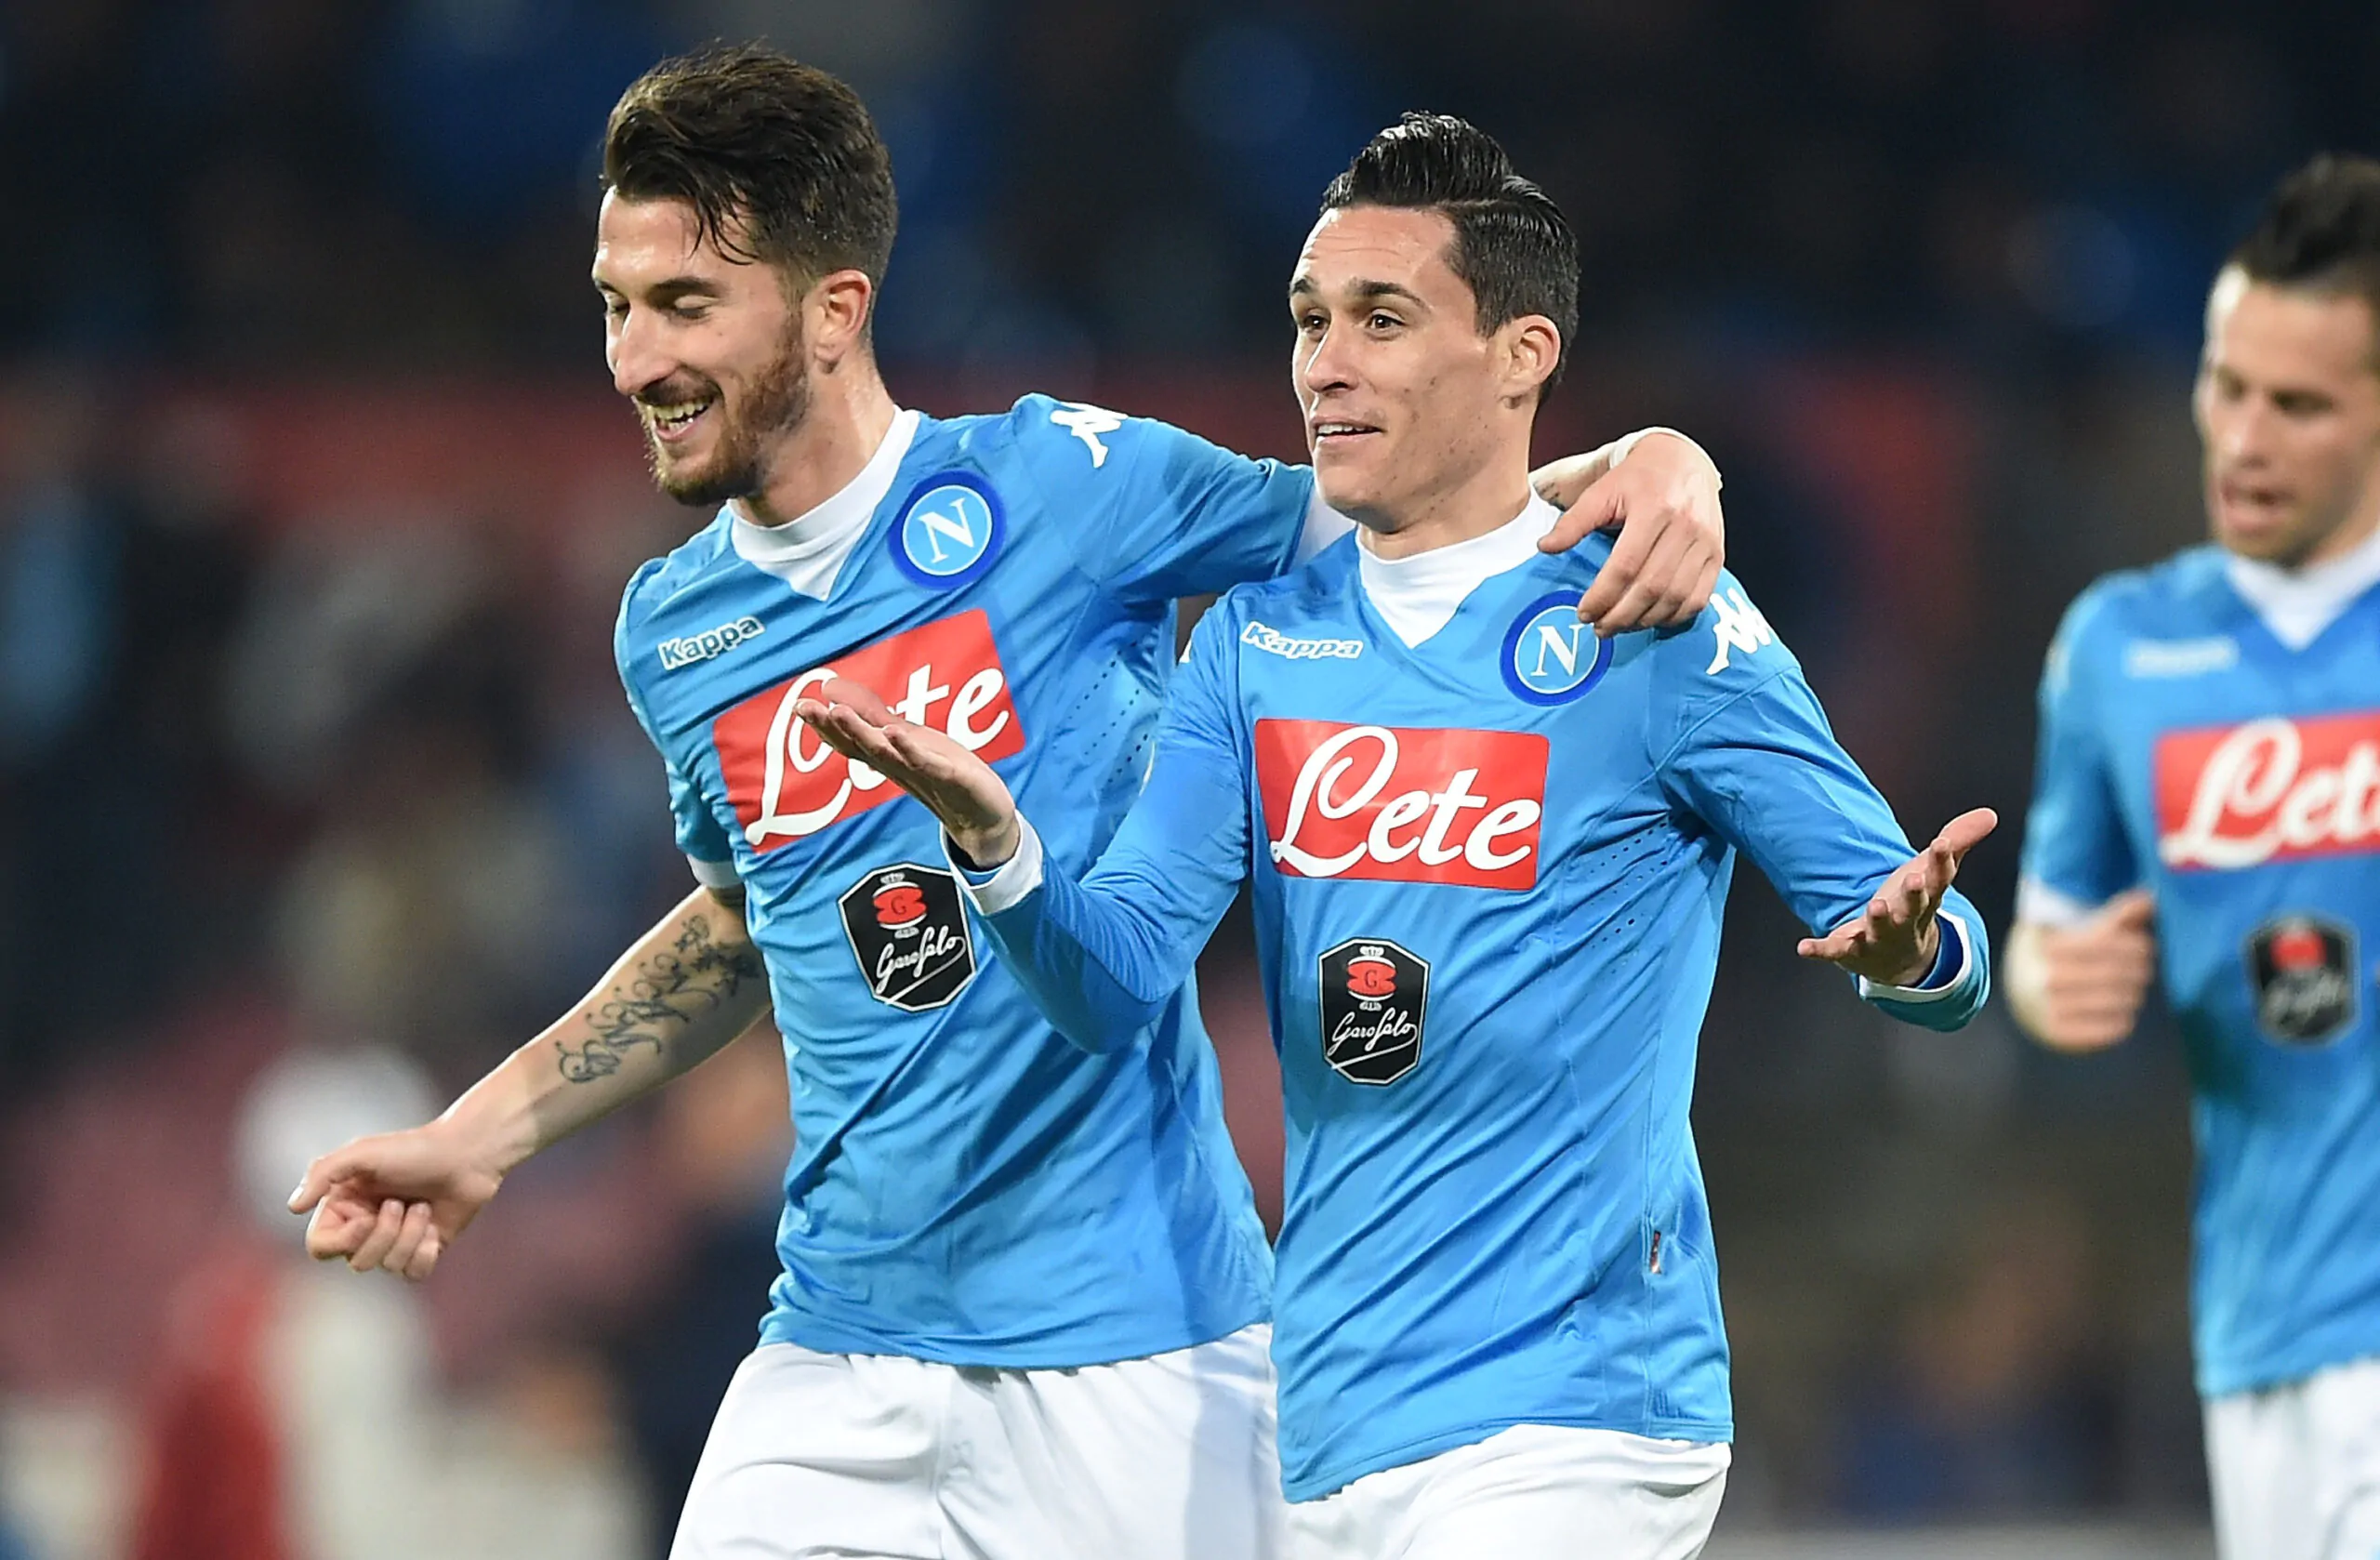 UFFICIALE- L’ex Napoli riparte dalla Serie C: la squadra